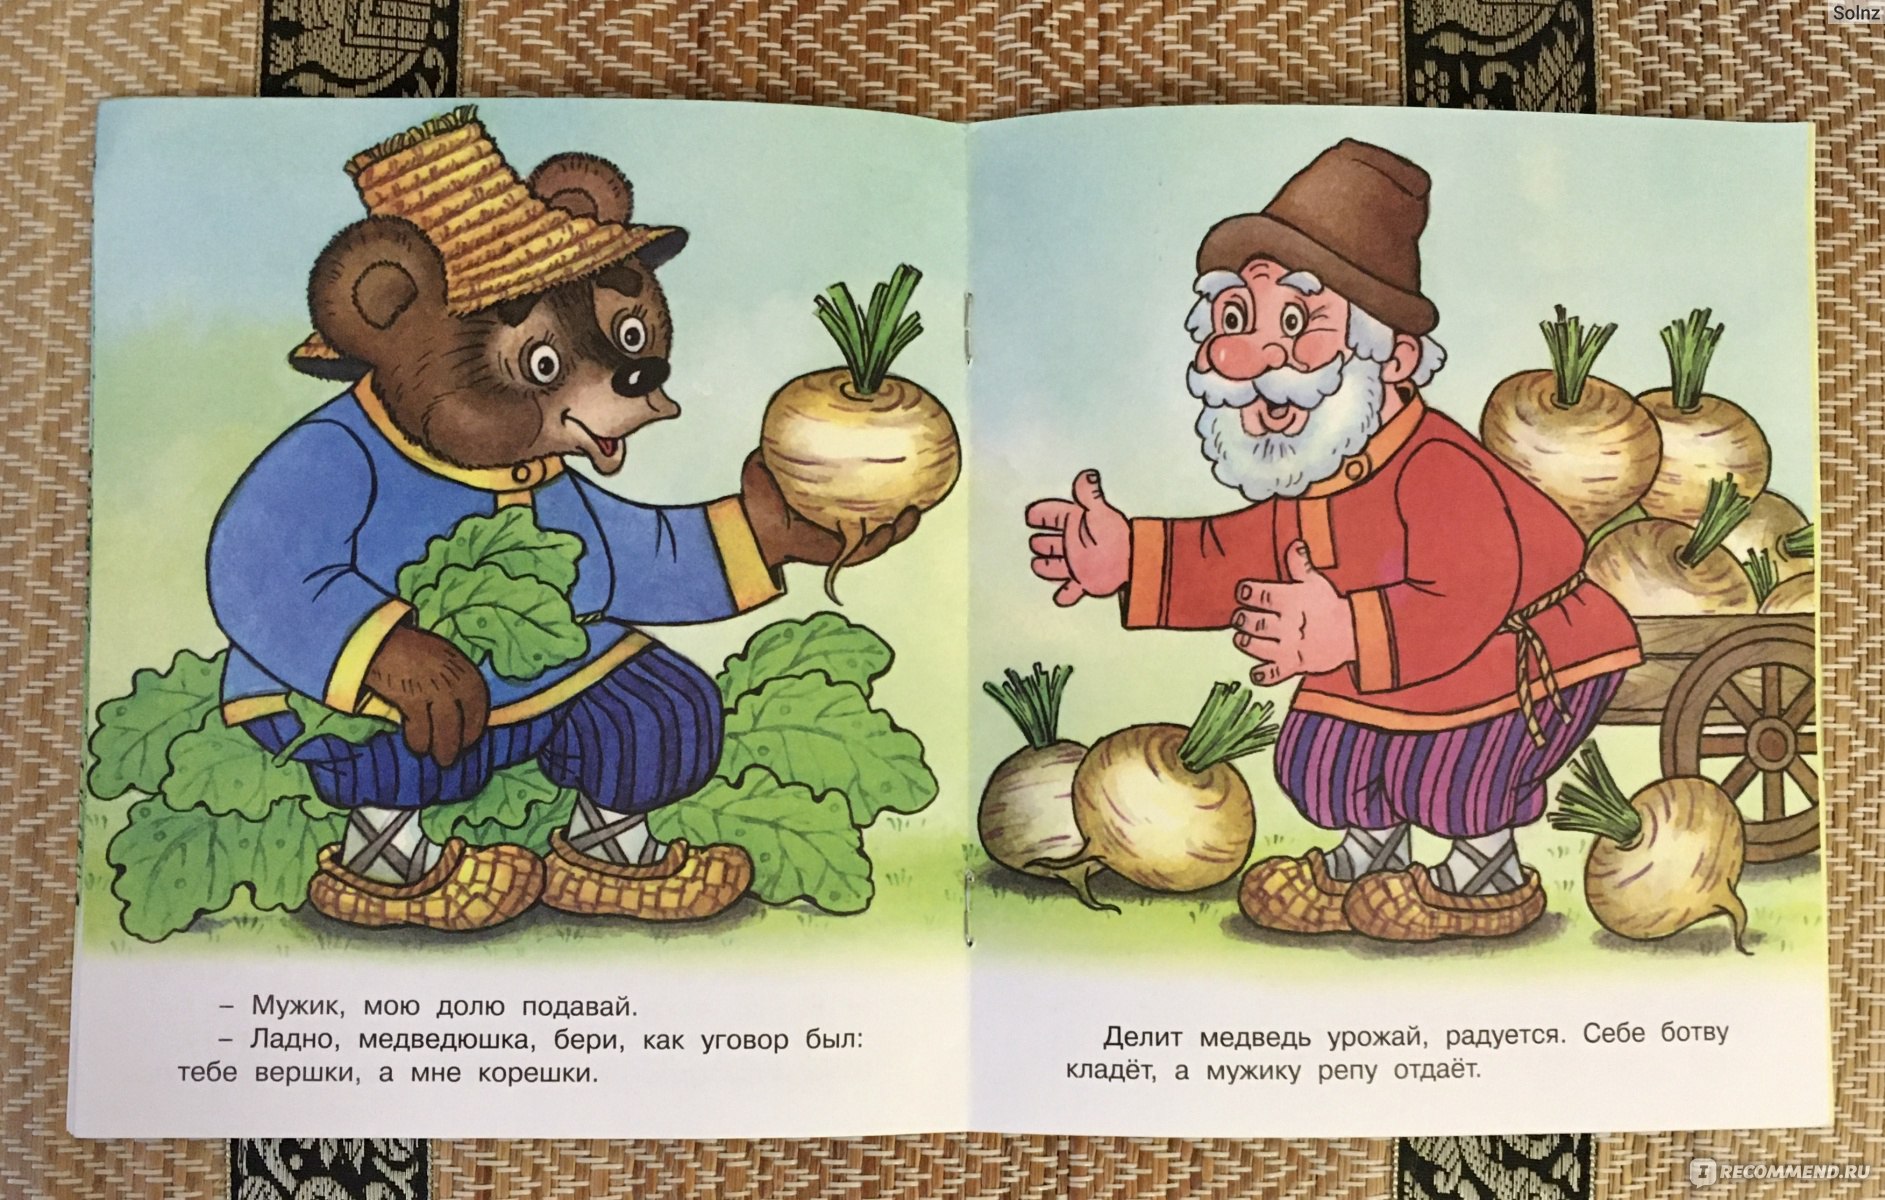 Вершки и корешки (мужик и медведь) — русская народная сказка